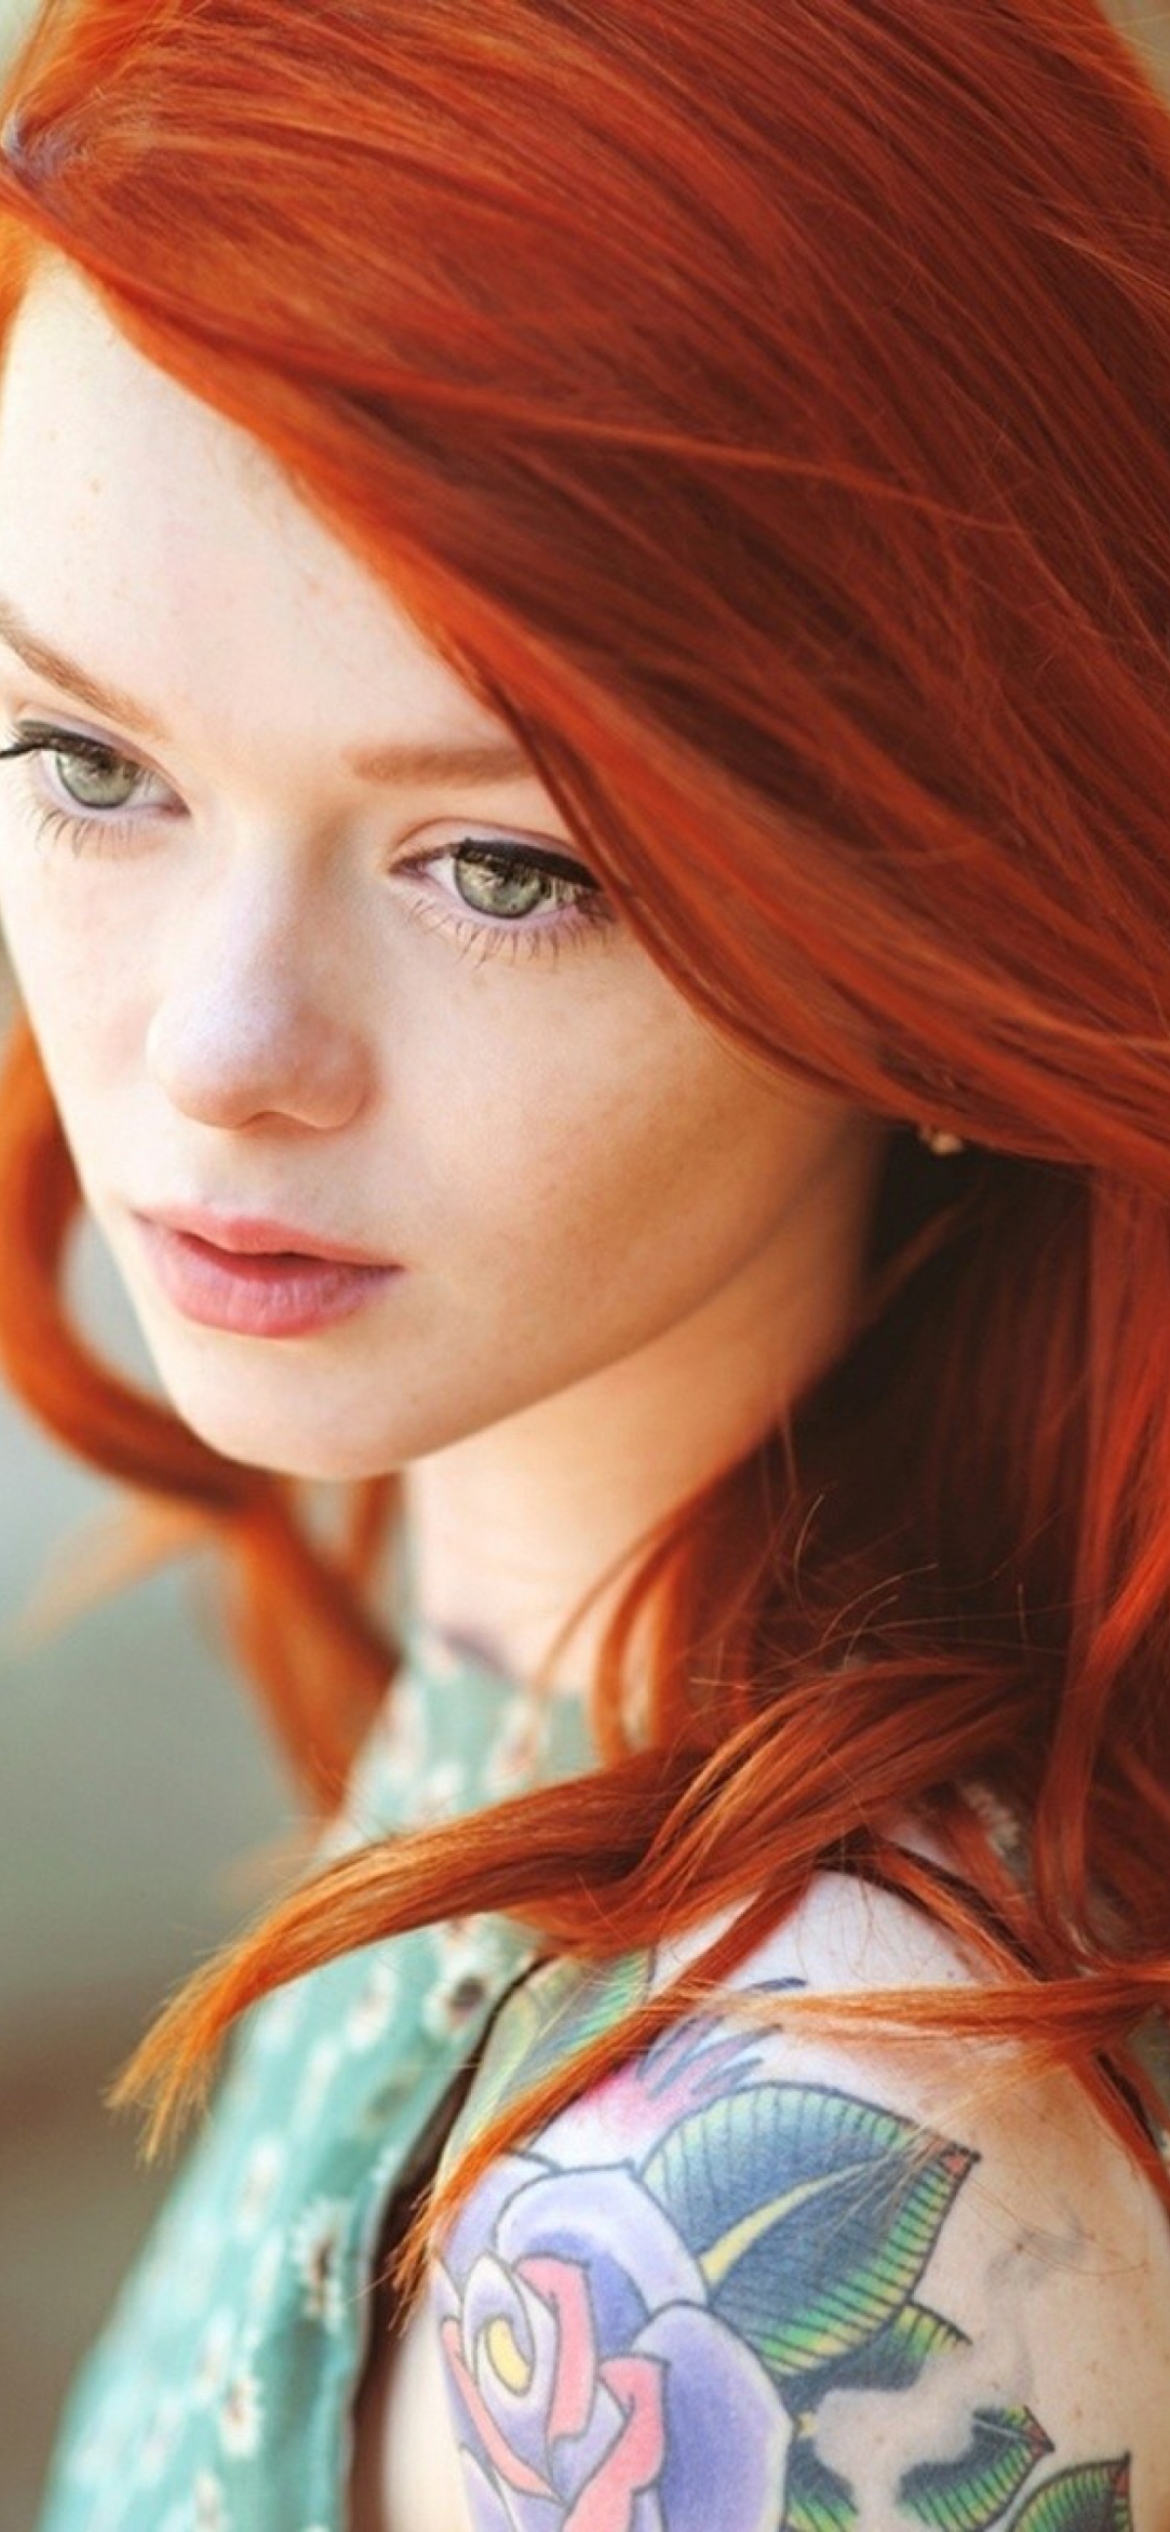 Sfondi Beautiful Girl With Red Hair 1170x2532